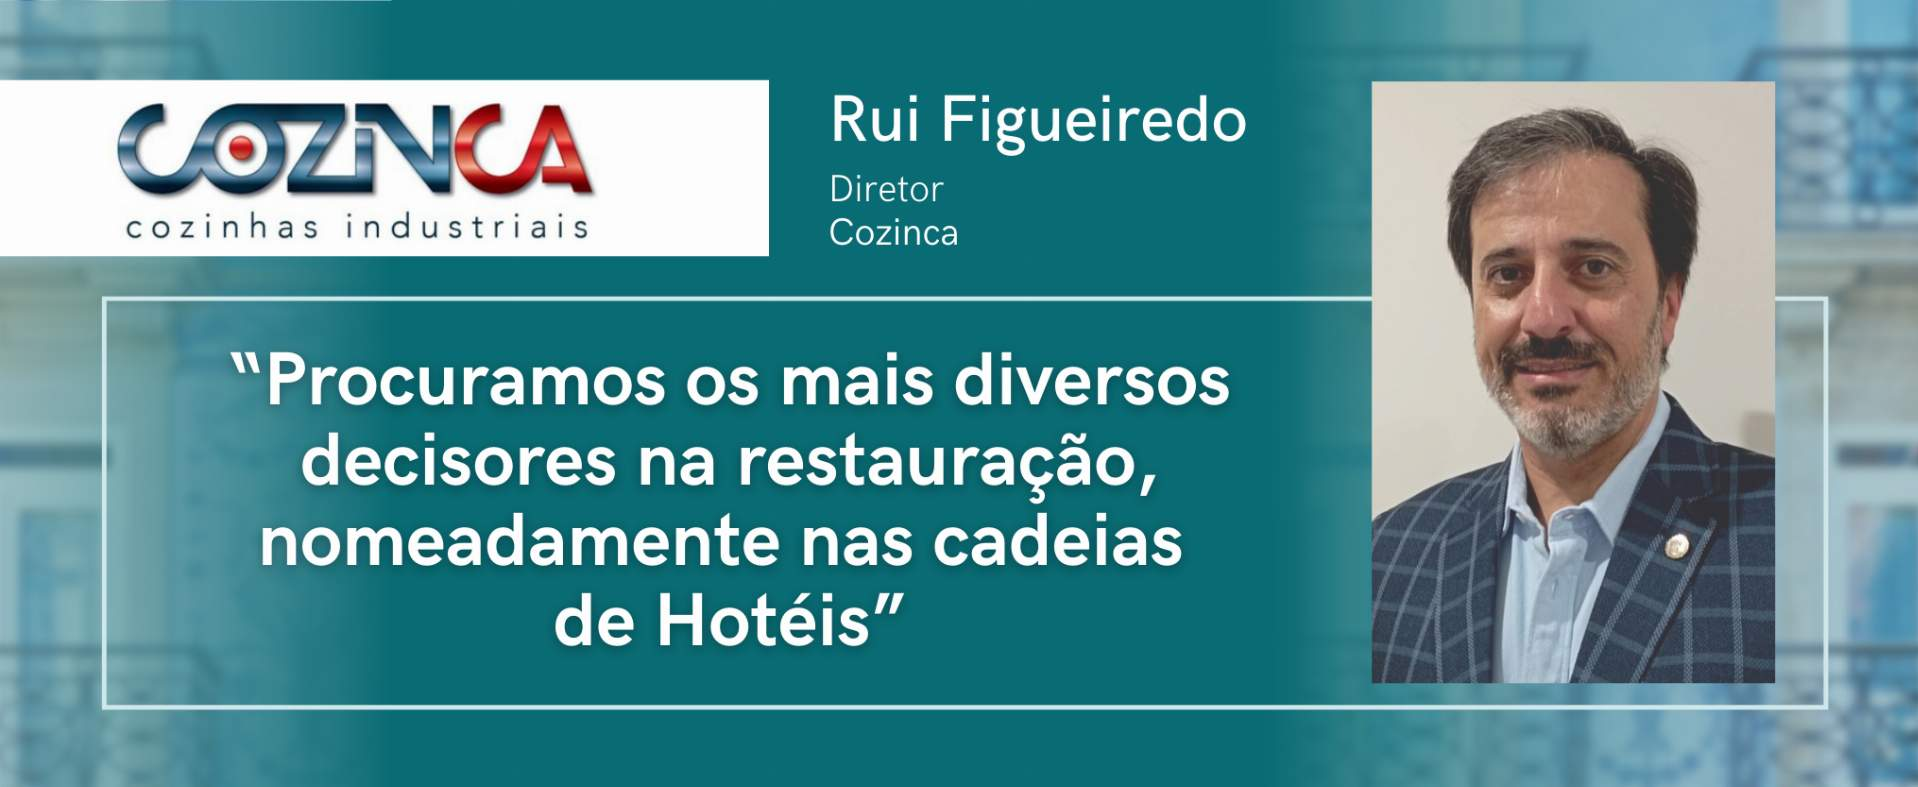 Cozinca : "Nous recherchons les décideurs les plus divers du secteur de la restauration, notamment dans les chaînes hôtelières".